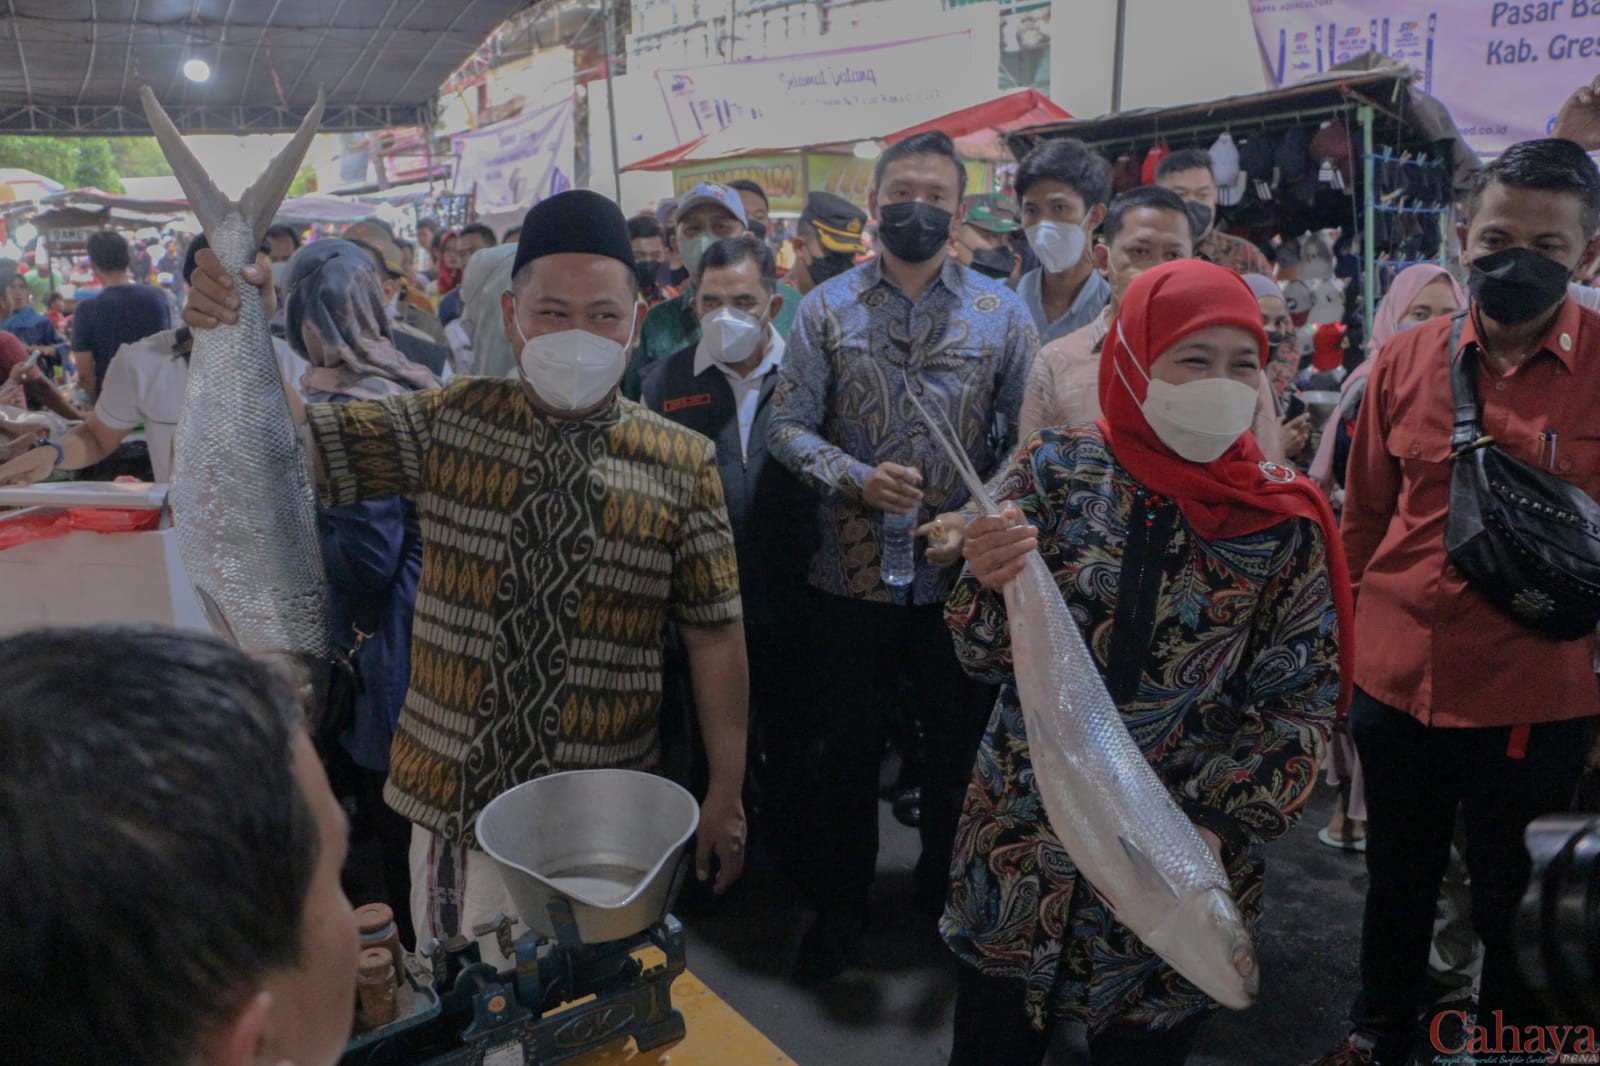 Gubernur Jatim Khofifah Indar Parawansah didampingi Bupati Gresik Fandi Ahmad Yani saat berkunjung ke Pasar Bandeng Gresik, Jumat (29/04/2022)